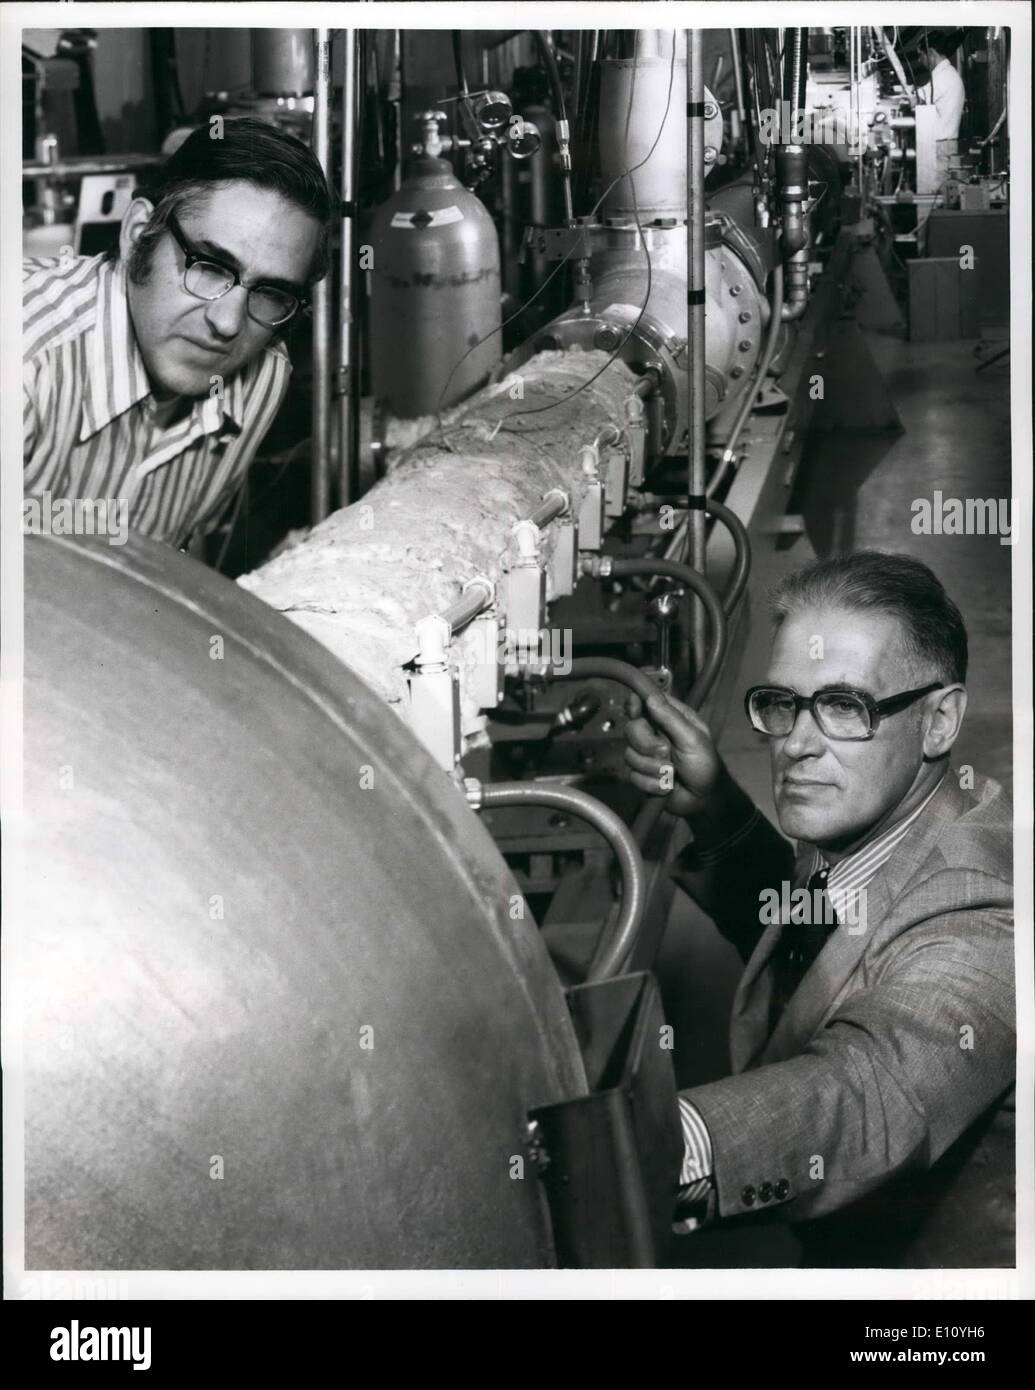 10 octobre 1974 - Plus de puissance. Une explosion de gaz chaud à rugissant, 3 000 miles par heure dans cette 60 pieds de lon.g shock tunnel à General Electric en sciences spatiales Laboratoire a brisé la barrière ''efficacité'' qui a calé magnétohydrodynamique (MHD) electric power research au cours des dix dernières années. Dr. Leo Steg (à droite), gestionnaire de la laboratoire GE à Valley Forge, Pennsylvanie , dit la formidable avancée est une étape importante dans l'exploration de la promesse de MHD à cycle fermé pour l'option de l'énergie -réaliste la utilitaires, à cycle fermé de GE MHD équipe de recherche, dirigée par le Dr Banque D'Images